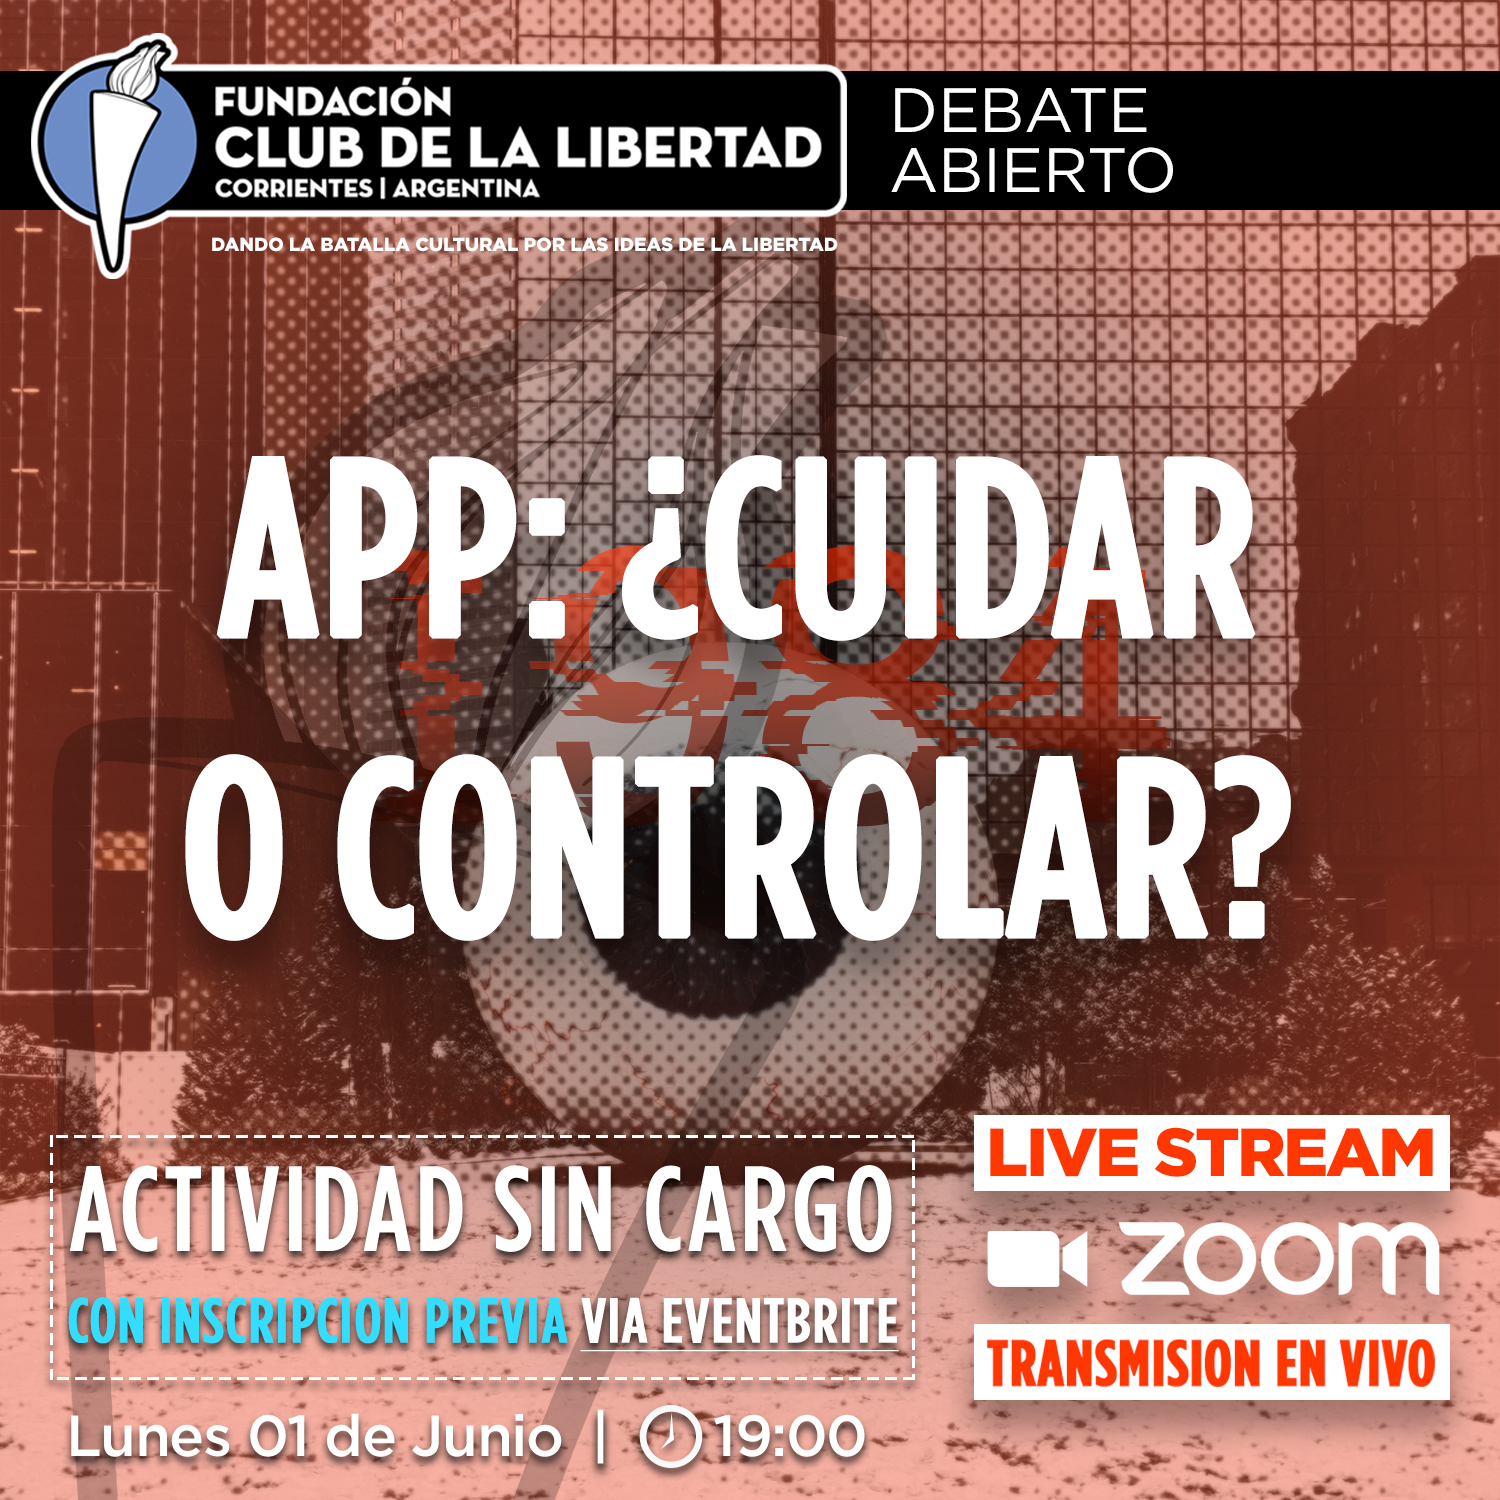 En este momento estás viendo Debate abierto: App ¿Cuidar o controlar?